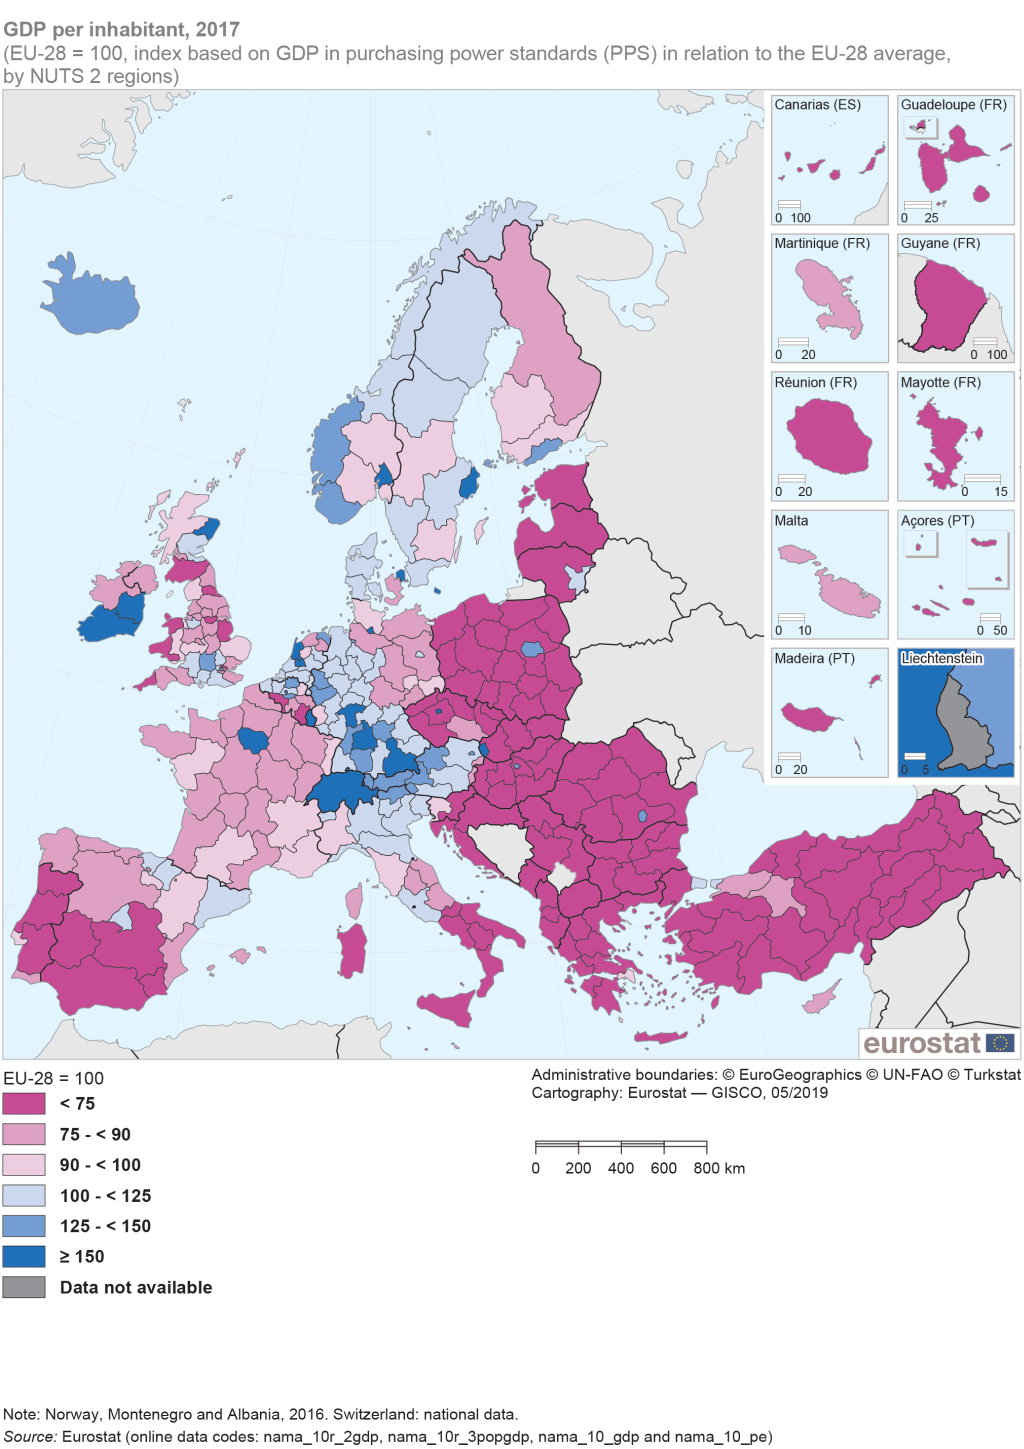 Le Pib Au Niveau Régional - Statistics Explained intérieur Carte Union Européenne 2017